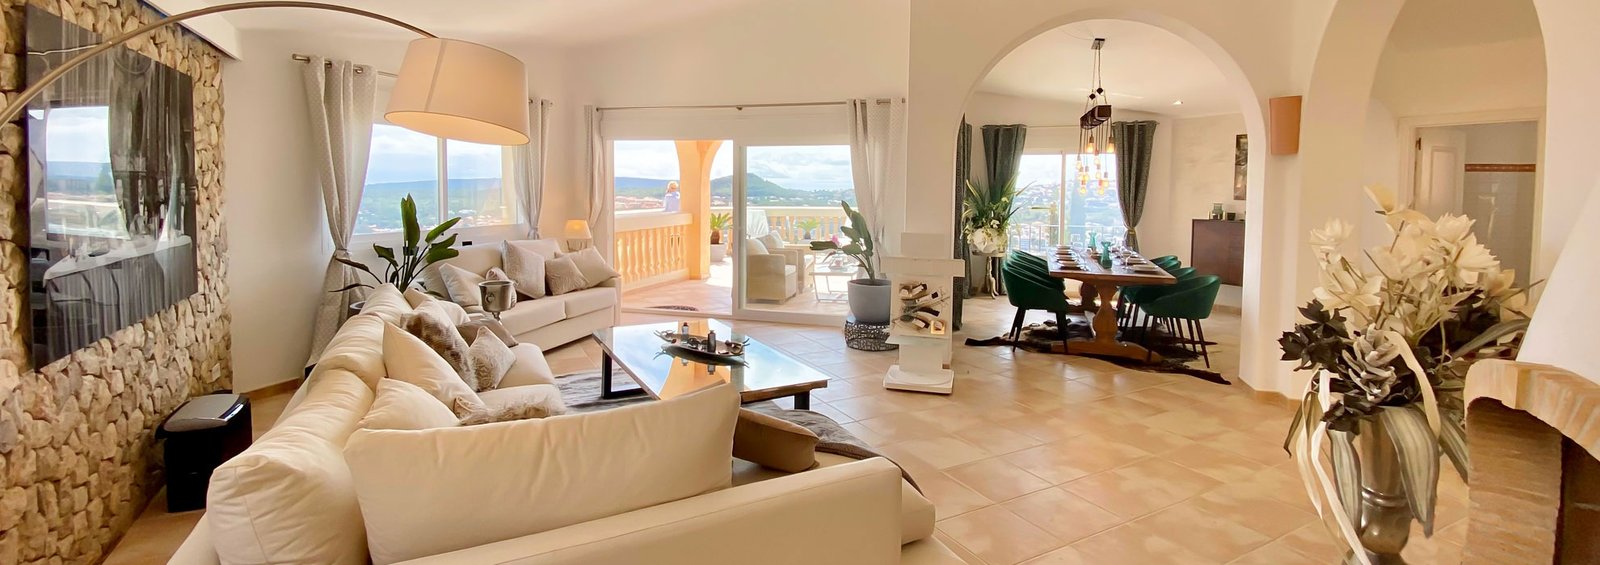 Villa with sea view - Mallorca